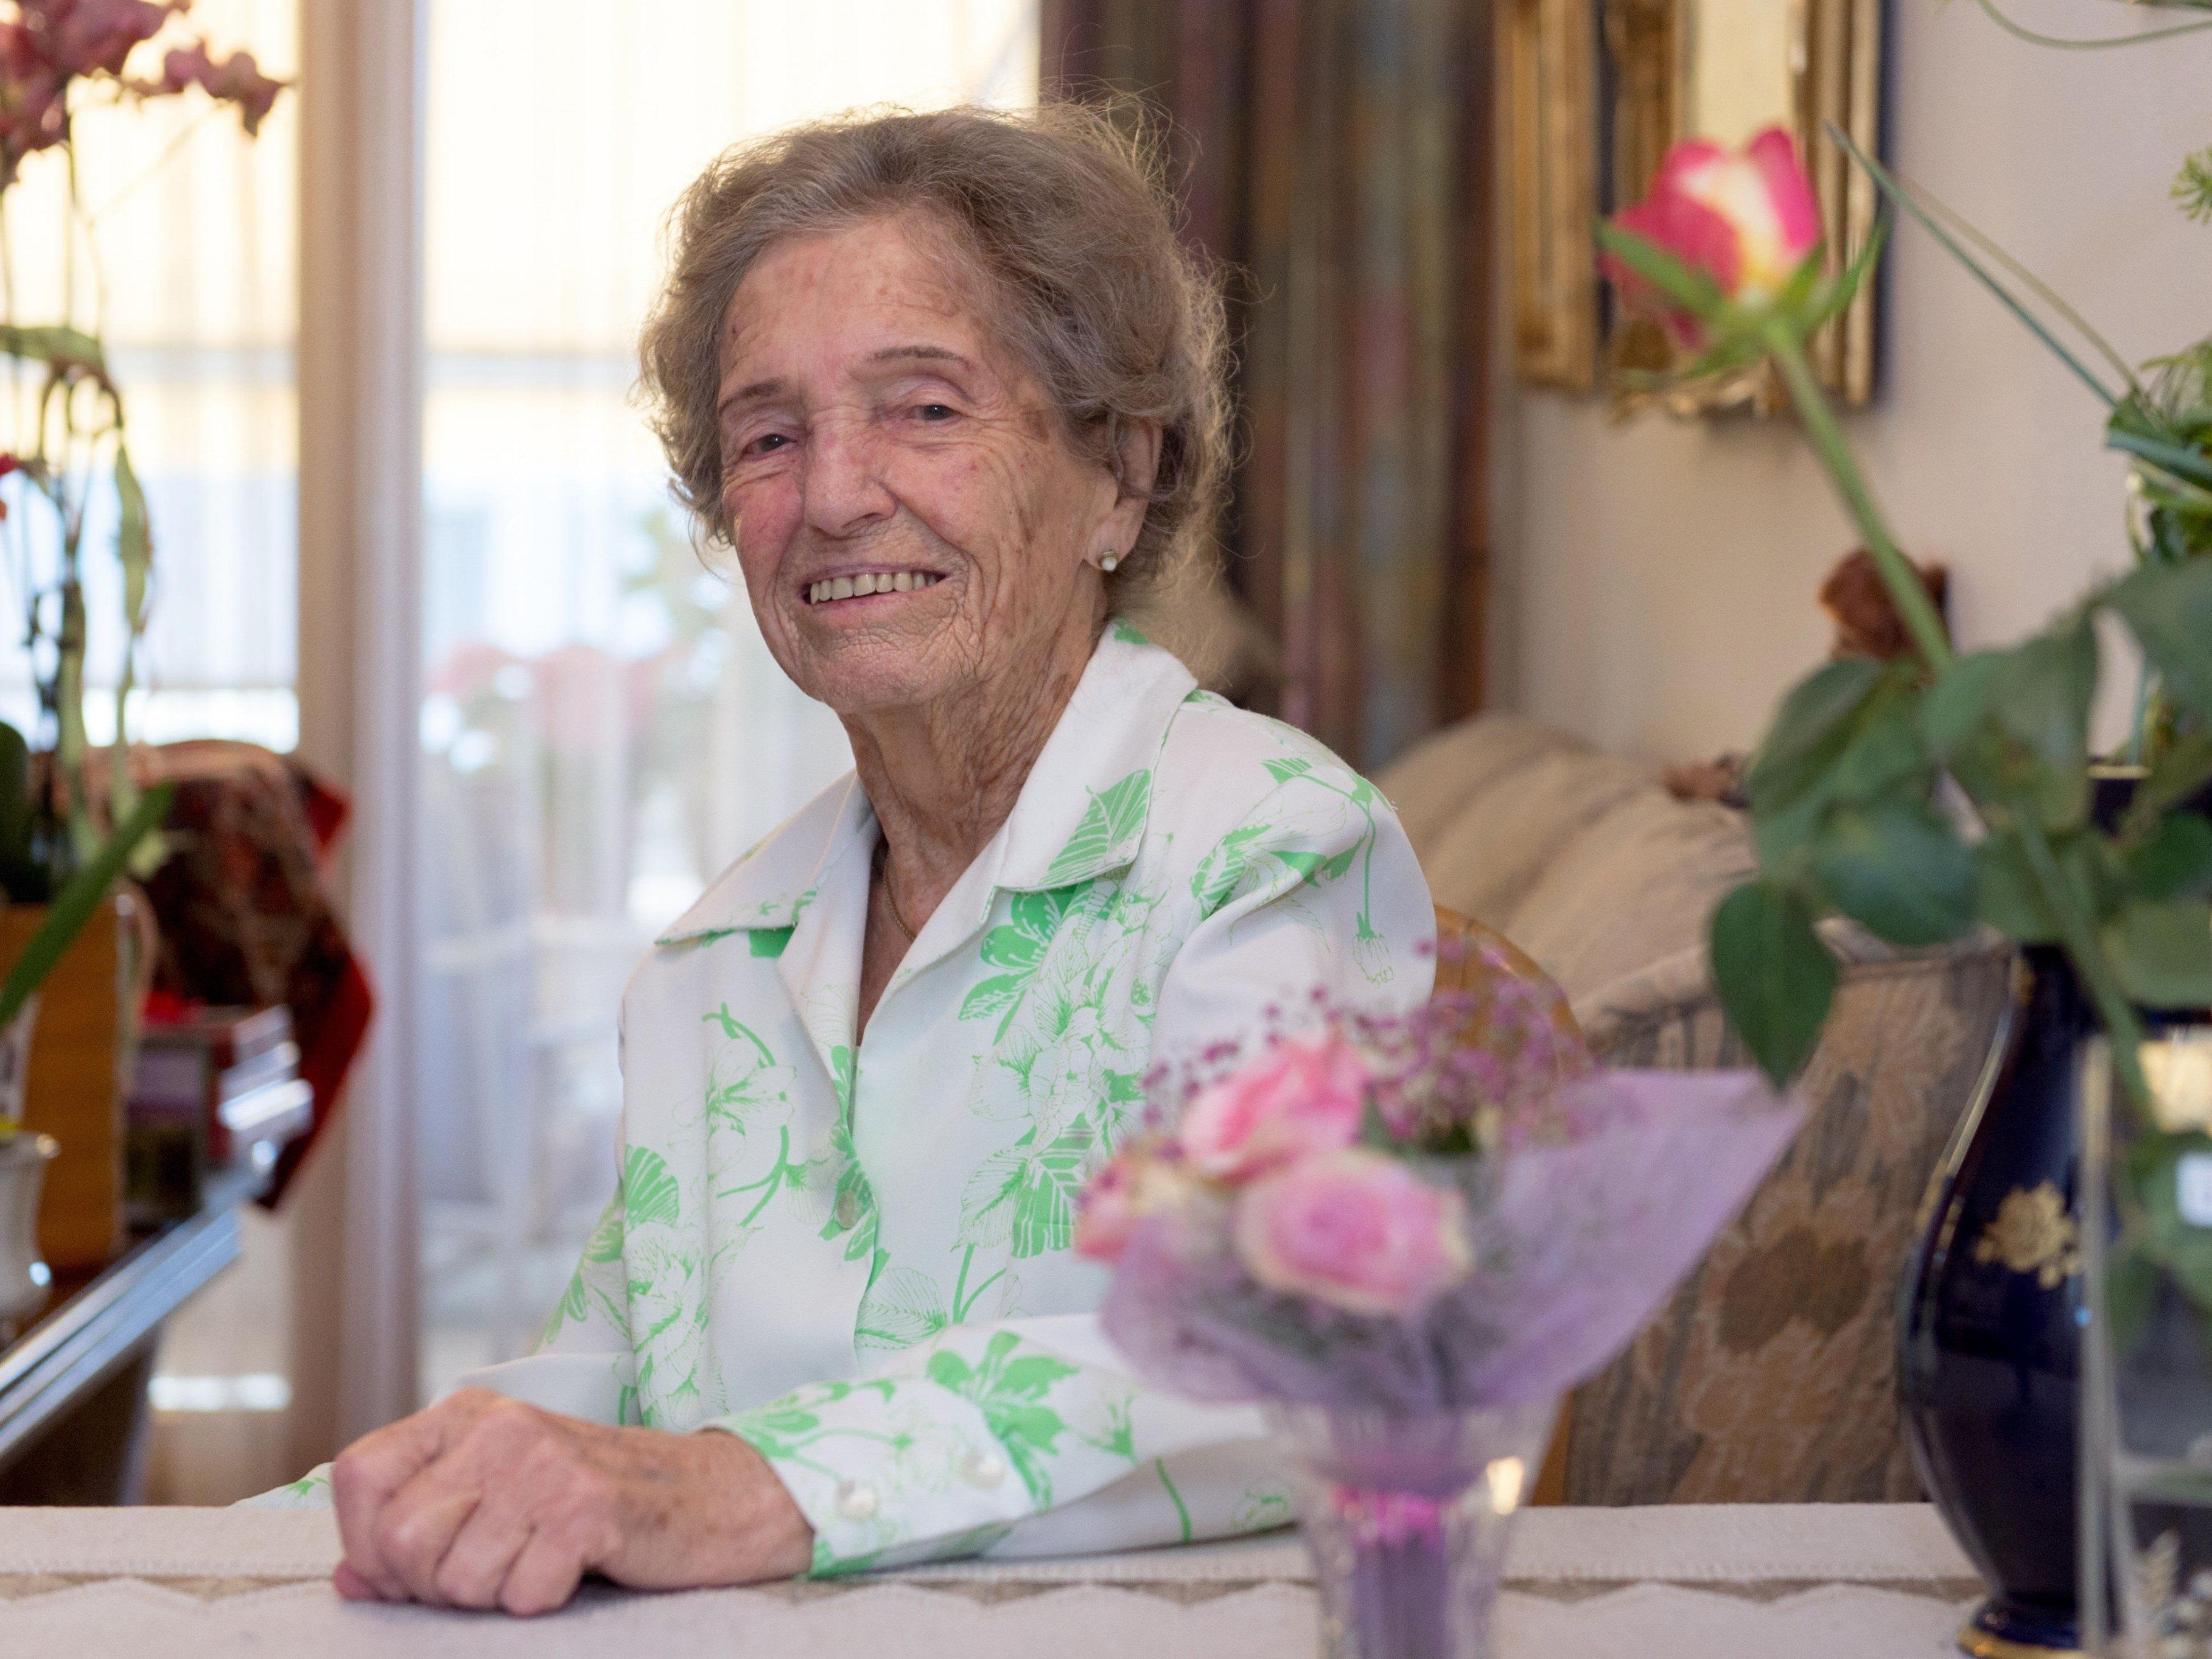 Lebt allein und kocht noch oft für sich selbst: Hilda Gamper ist mit ihren 100 Jahren noch sehr fit.